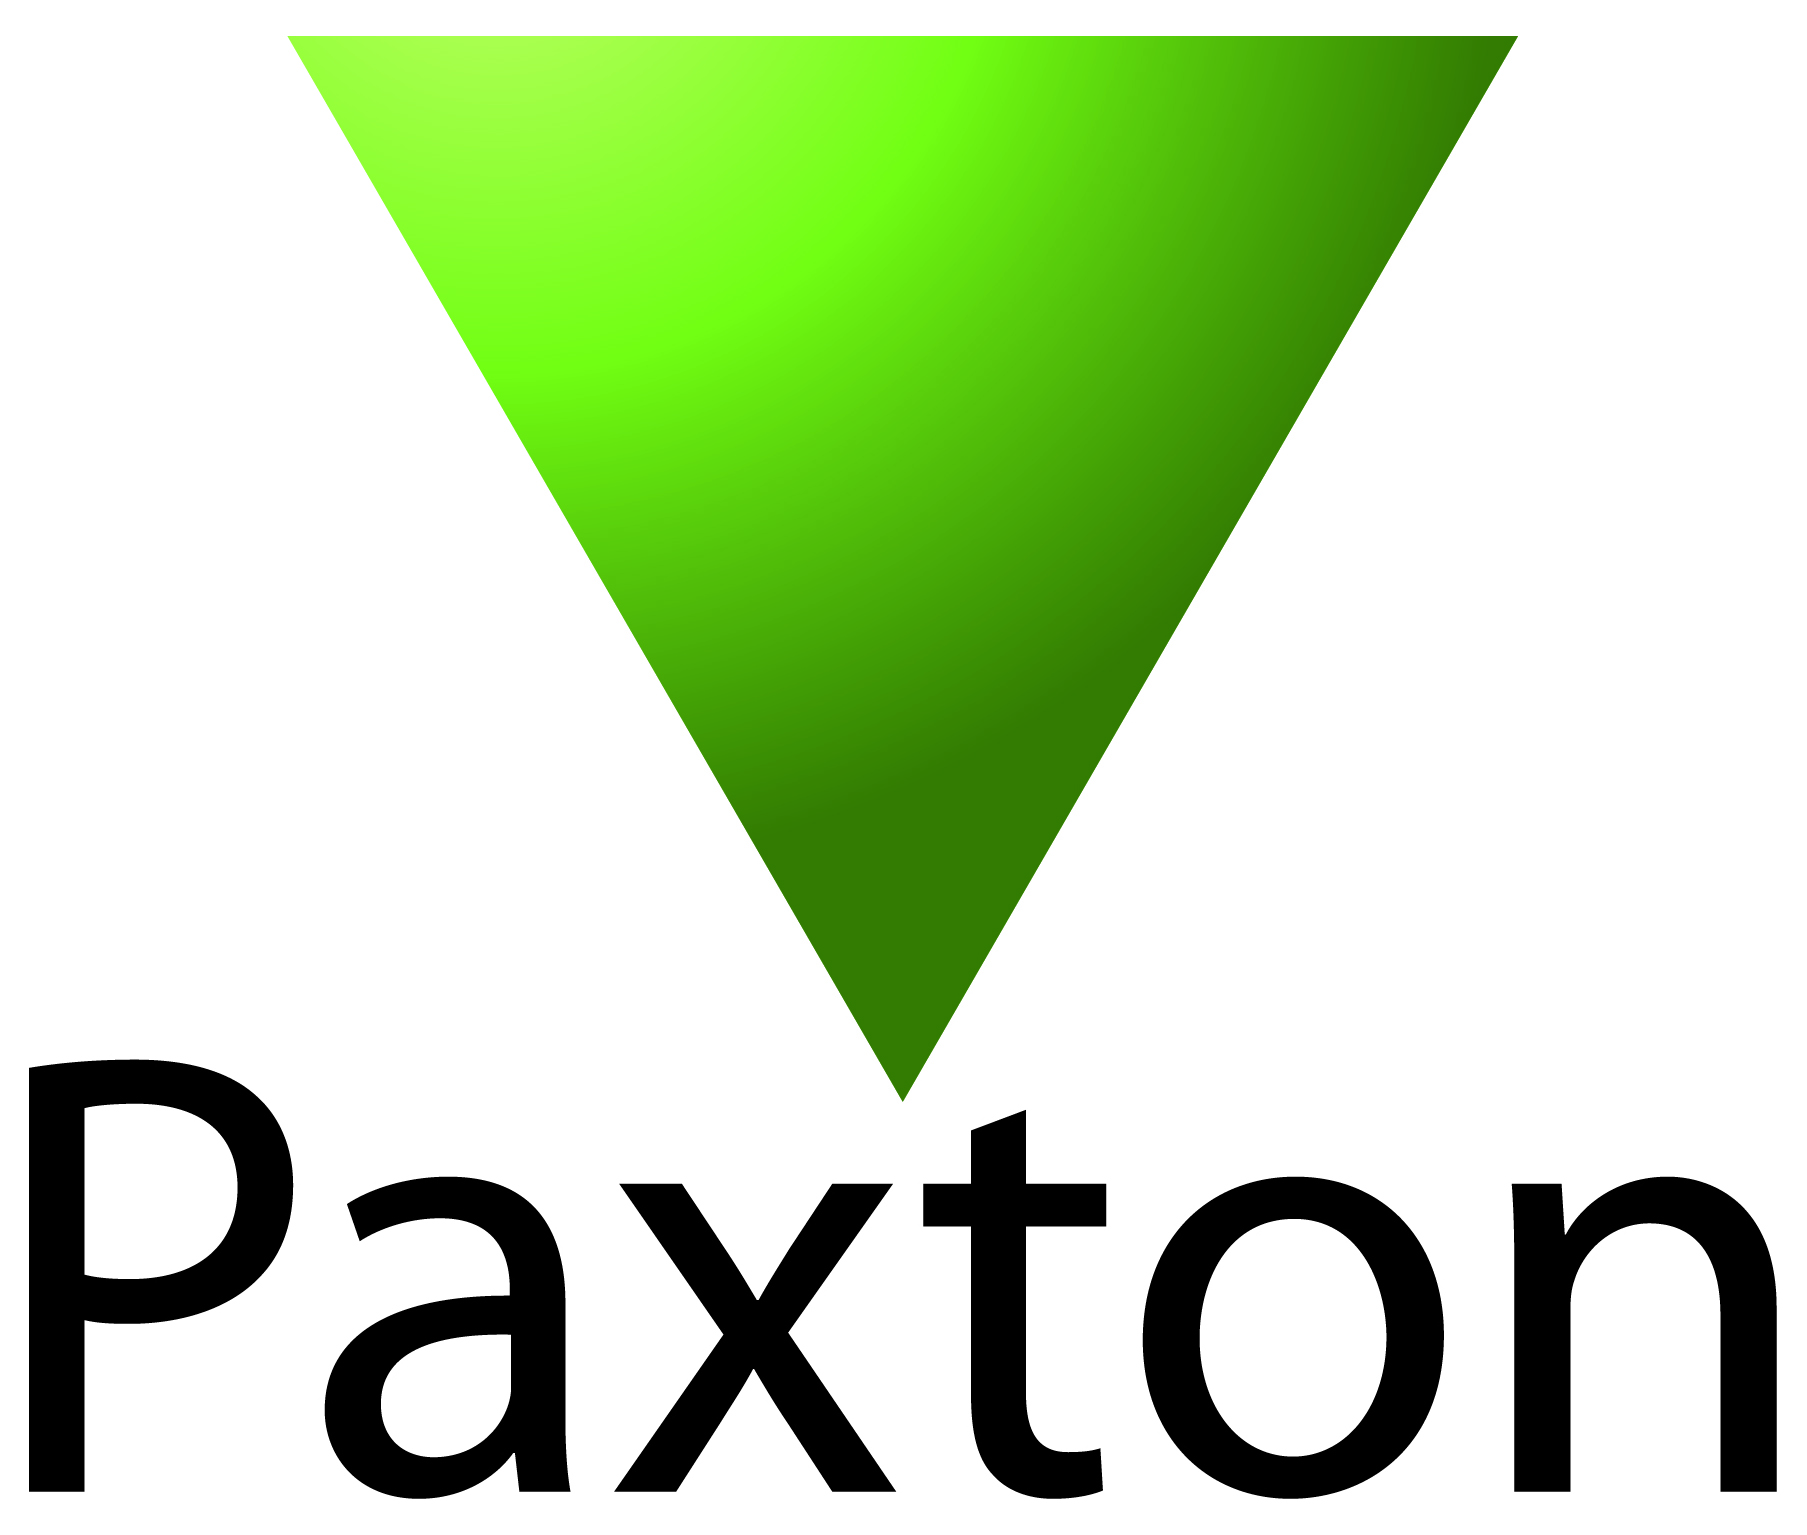 Paxton-logo-high-res.jpg